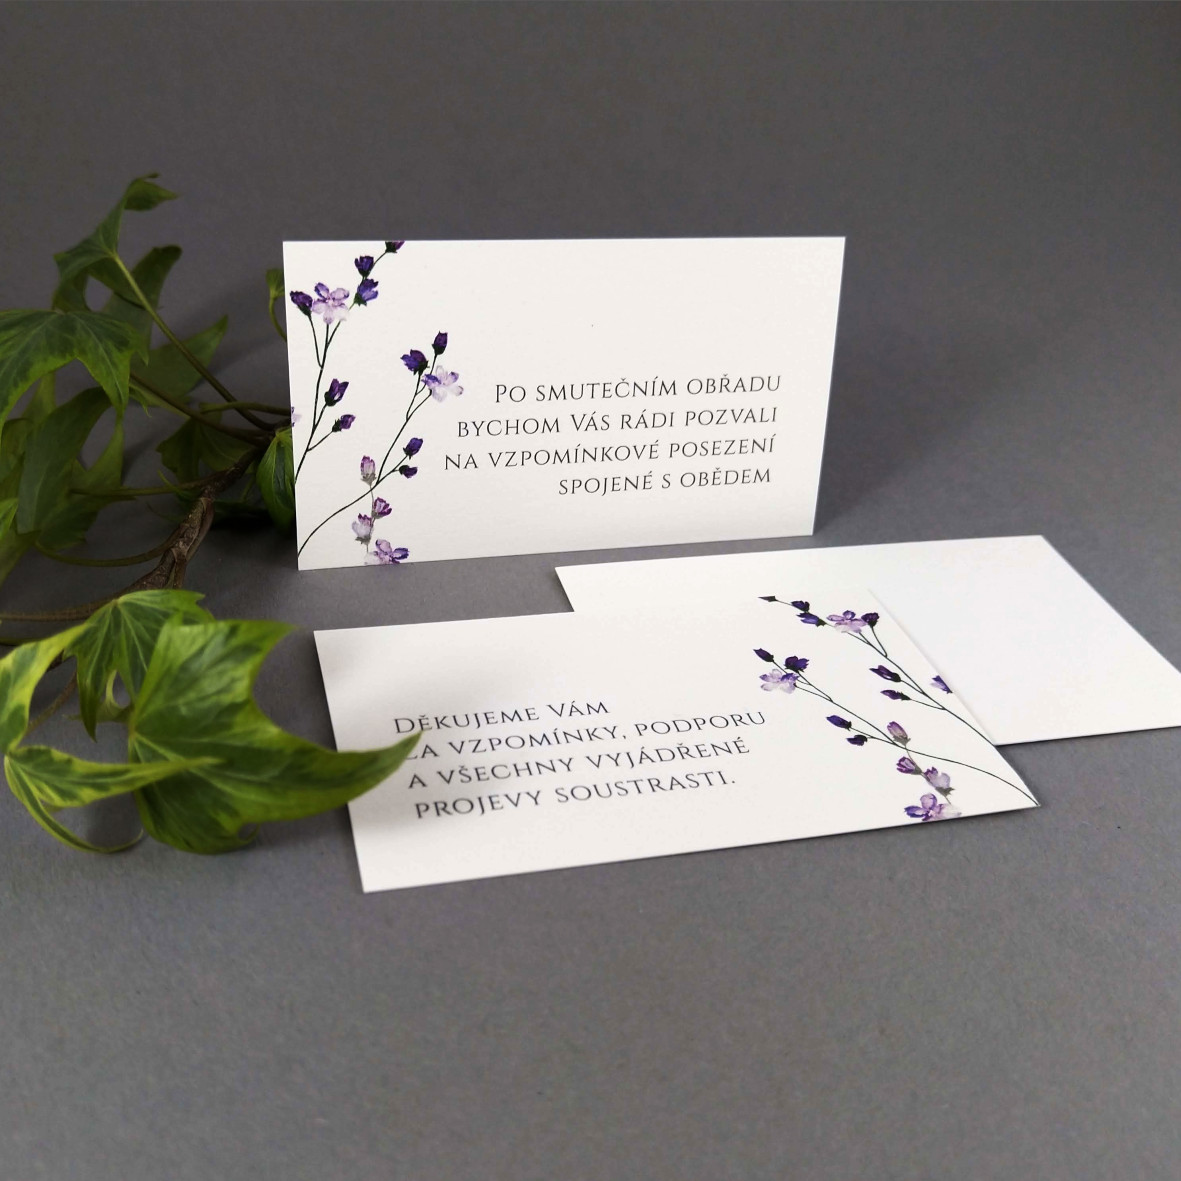 Pozvánka, informační karta – s motivem drobných fialových květů, formát 85 × 55 mm, jednostranná